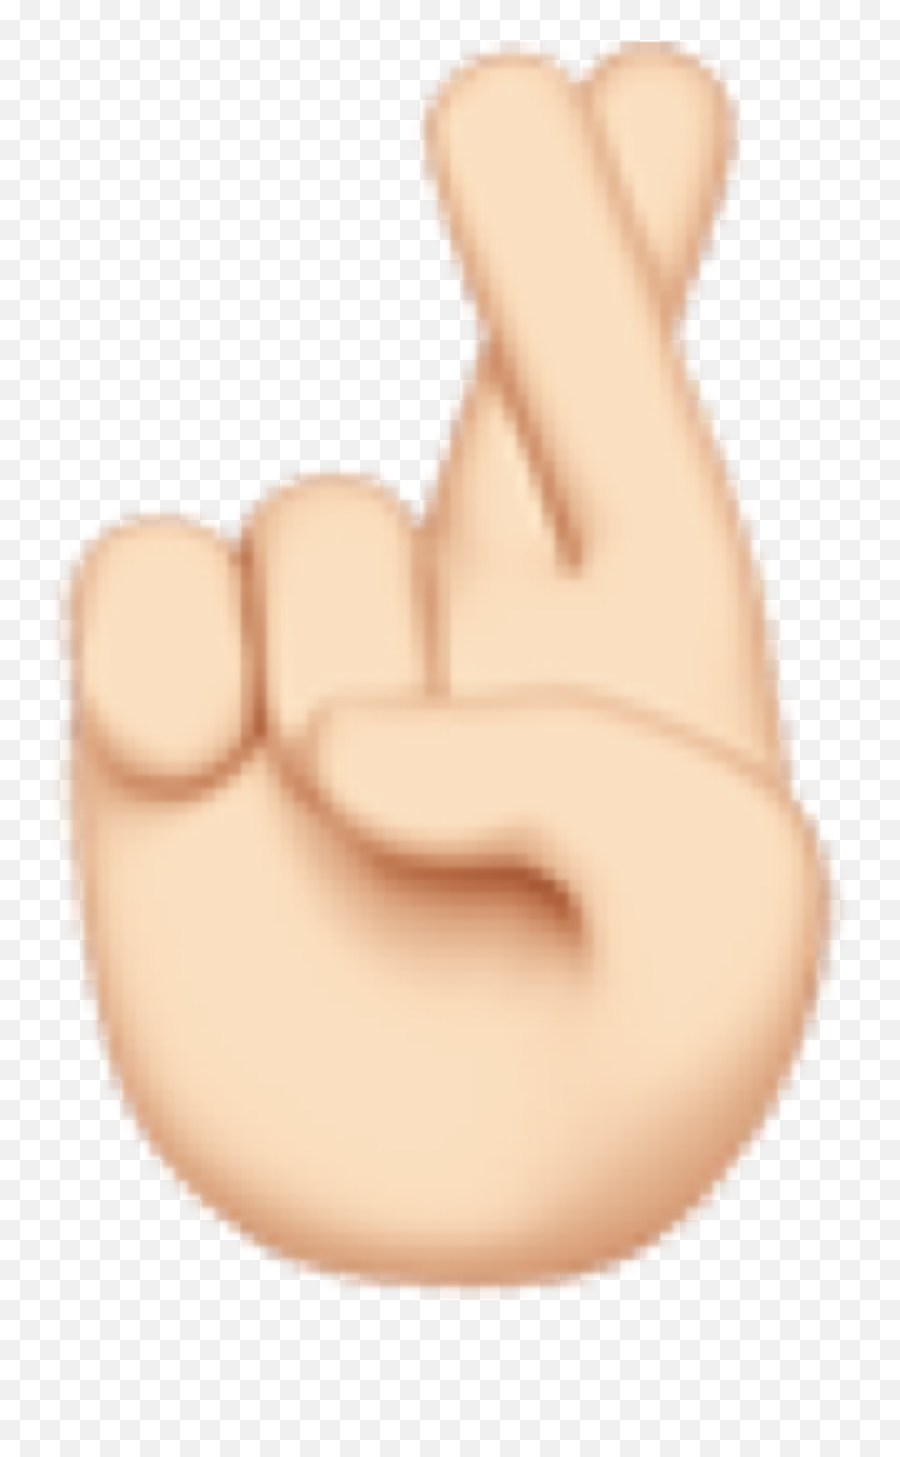 Hand Hands Emoji Iphone Sticker By Kristen - Sign Language,Ok Hand Emoji